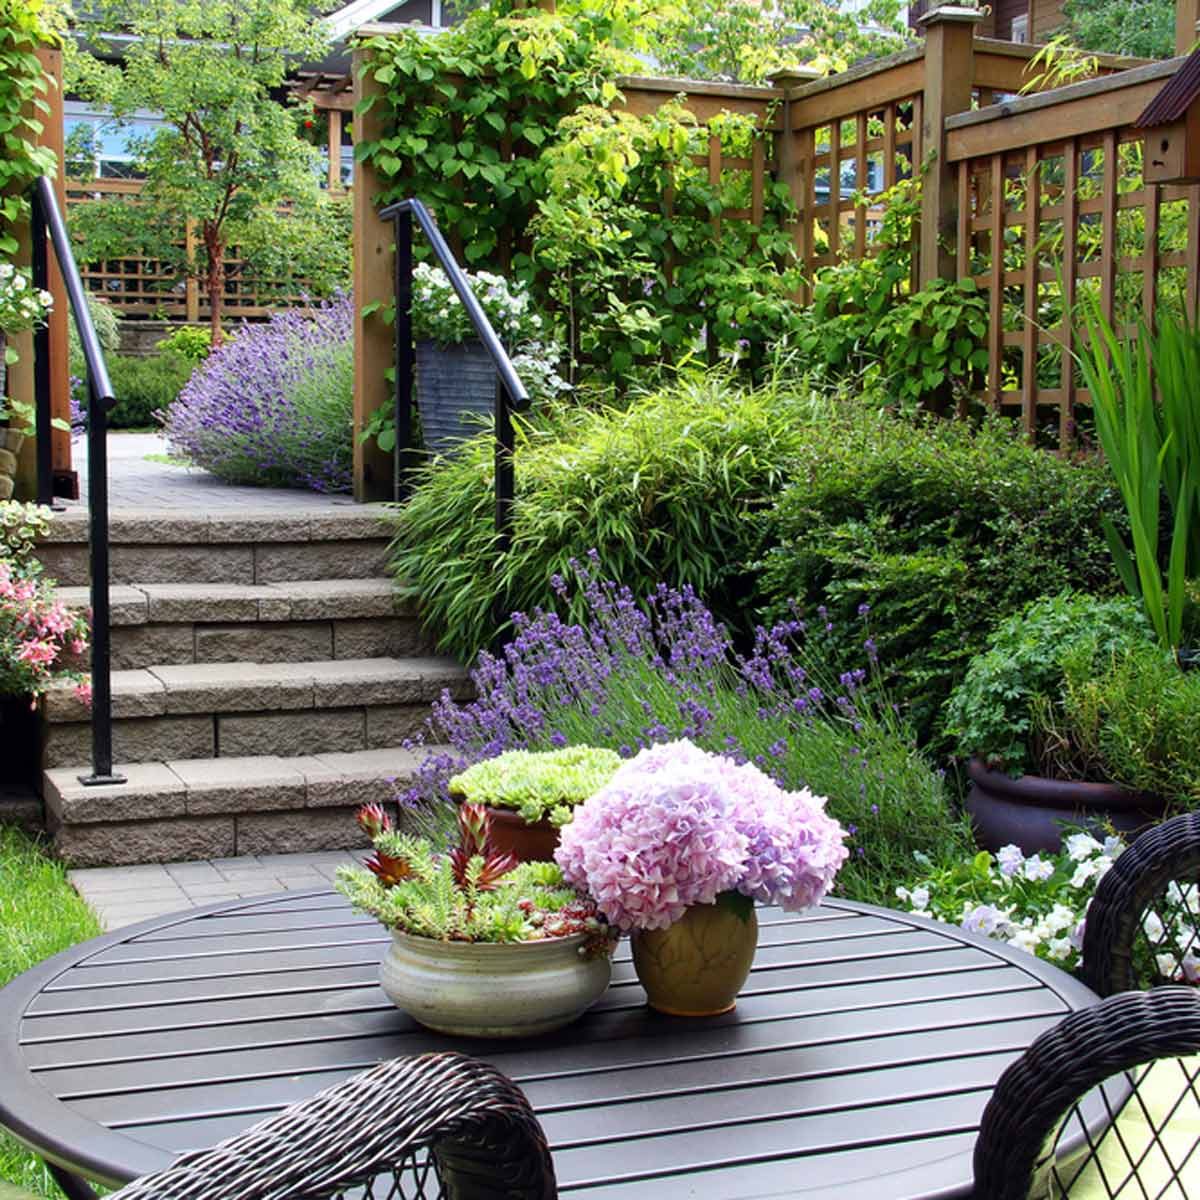 Simple Garden Design Ideas For Small Gardens